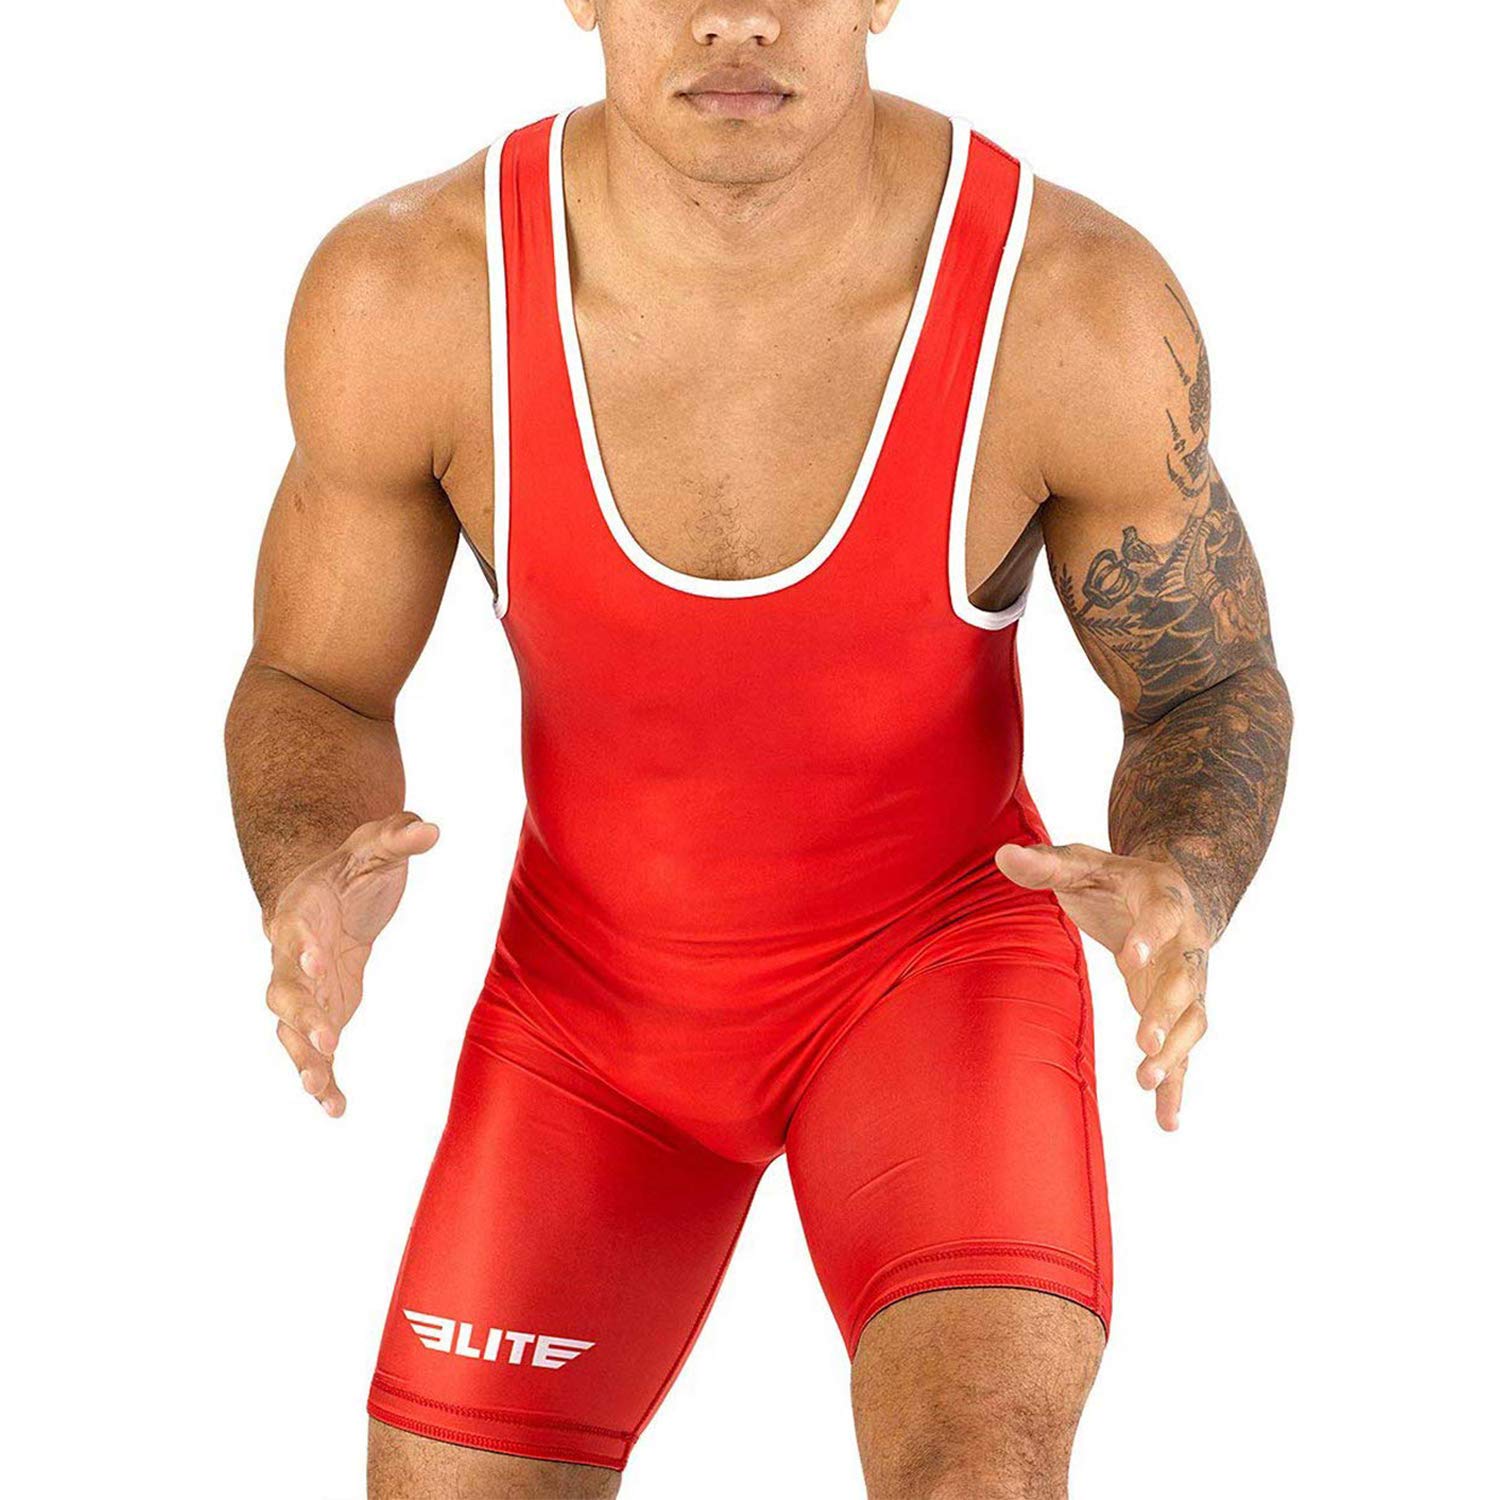 Elite Sports Menas Wrestling Singlets, Standard Singlet For Men Wrestling Uniform (Red, X-Large)